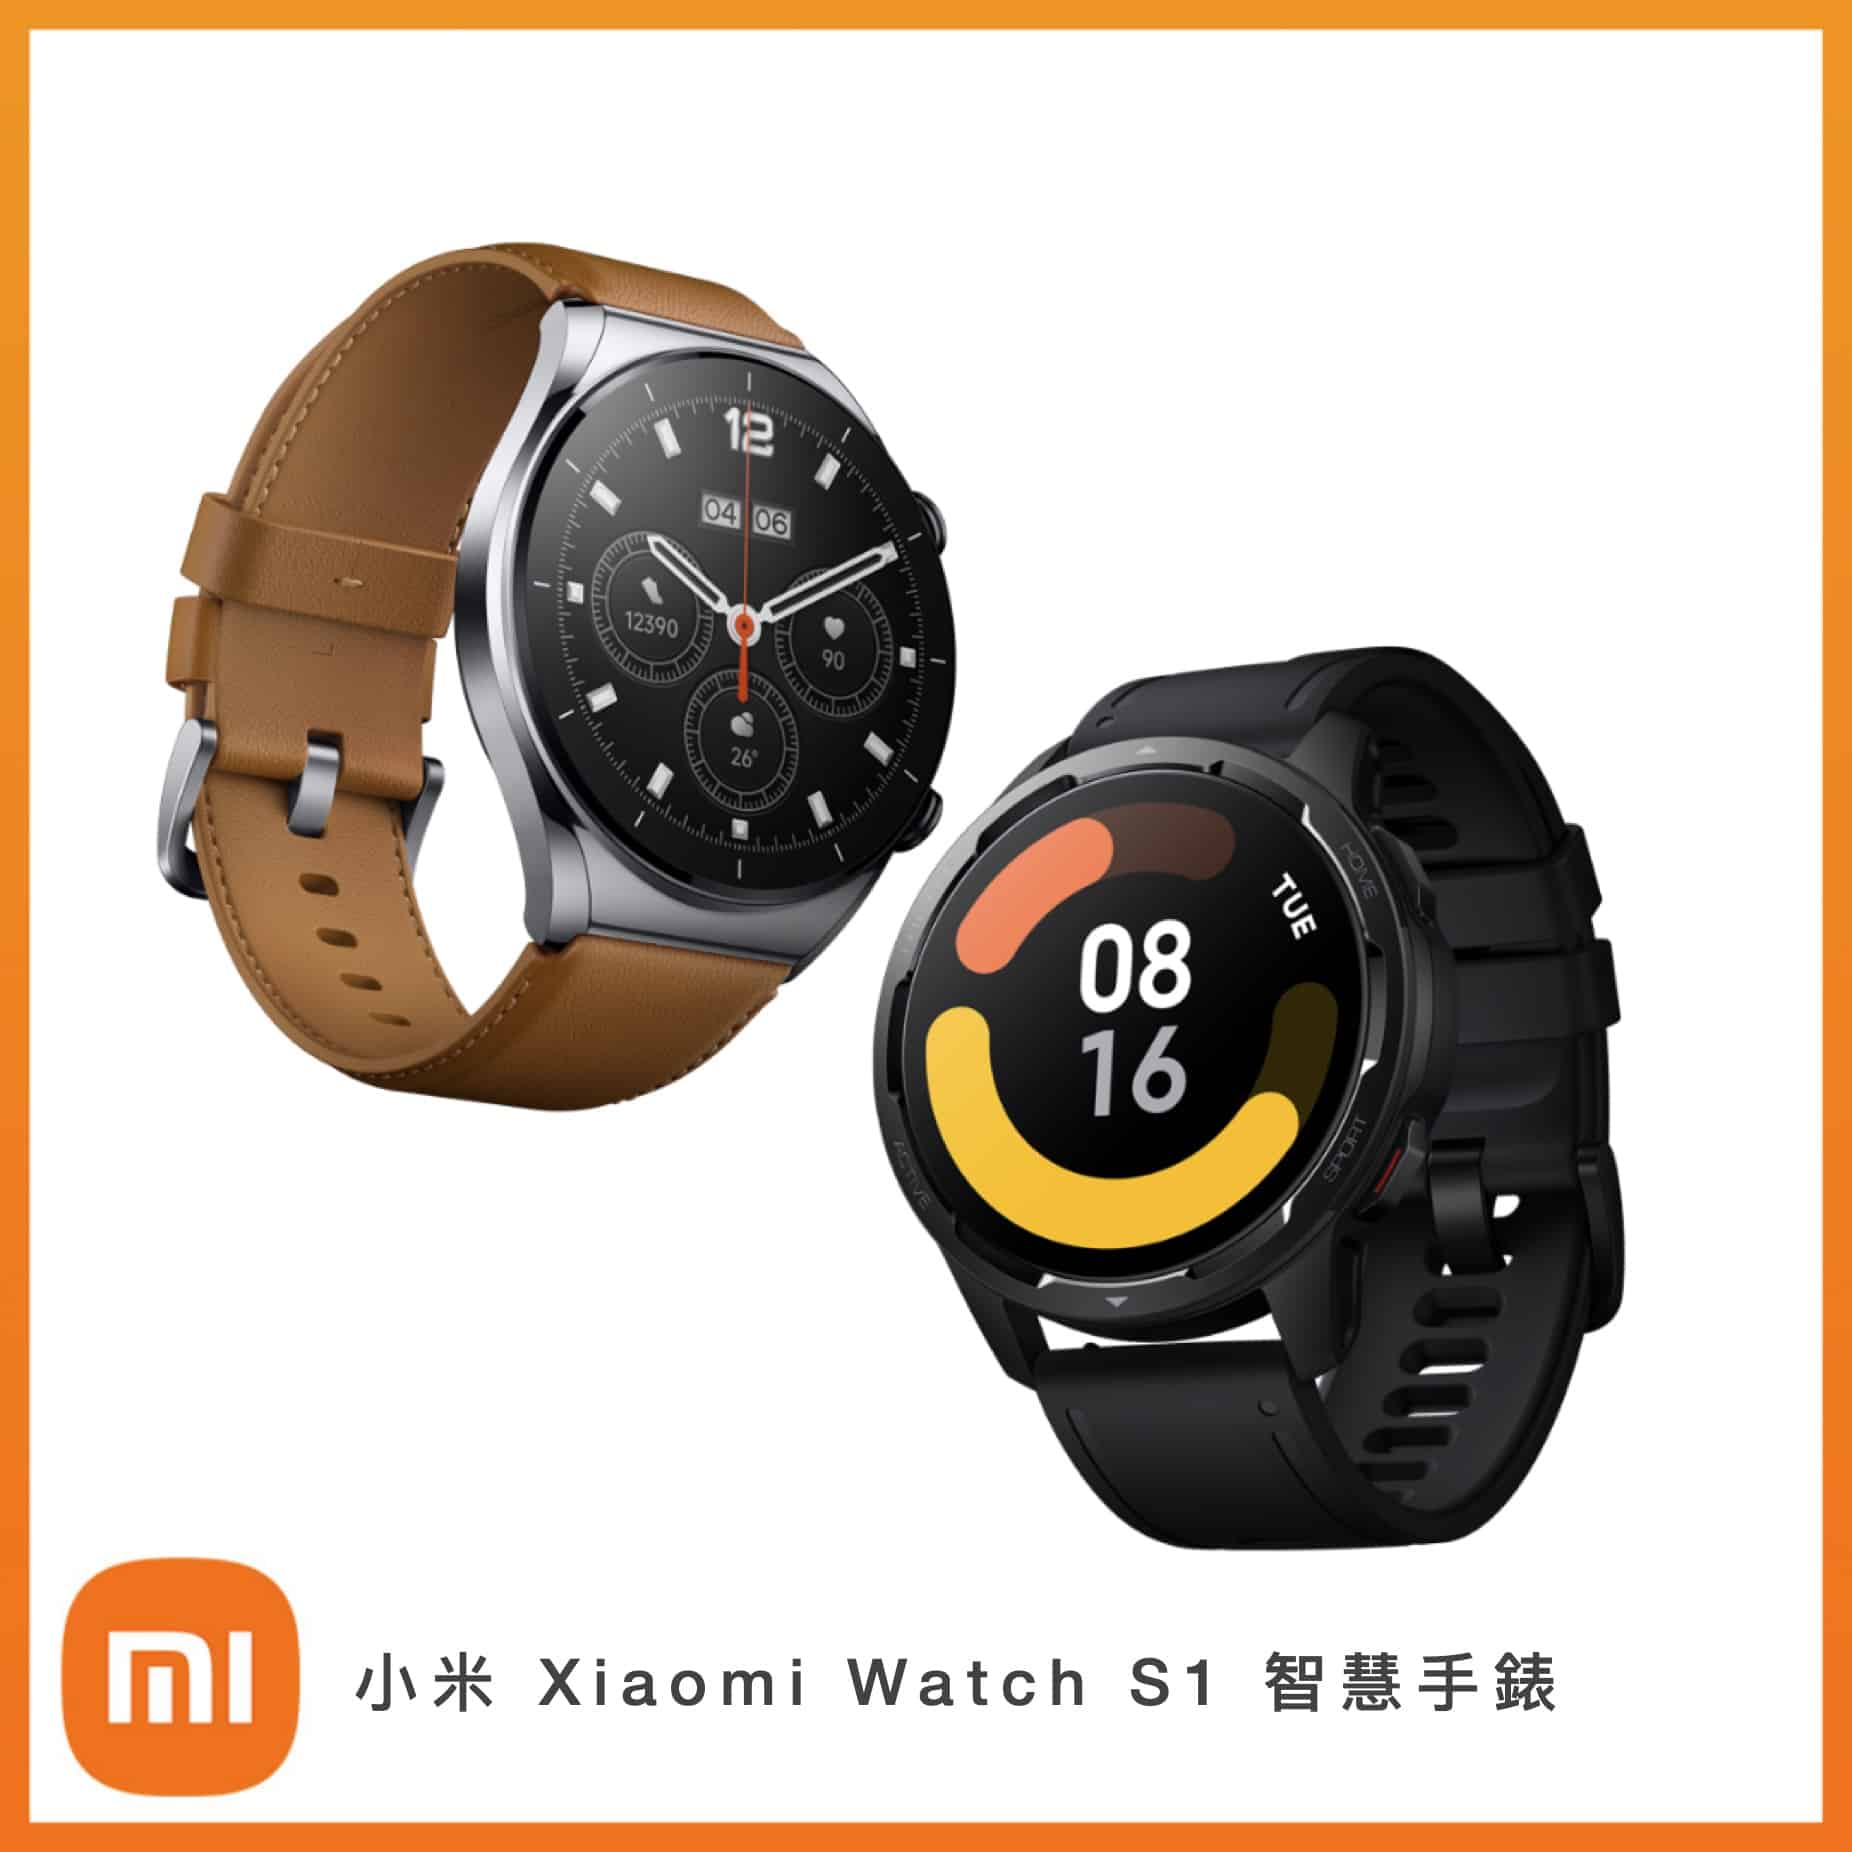 小米 Xiaomi Watch S1 智慧手錶 -二色選